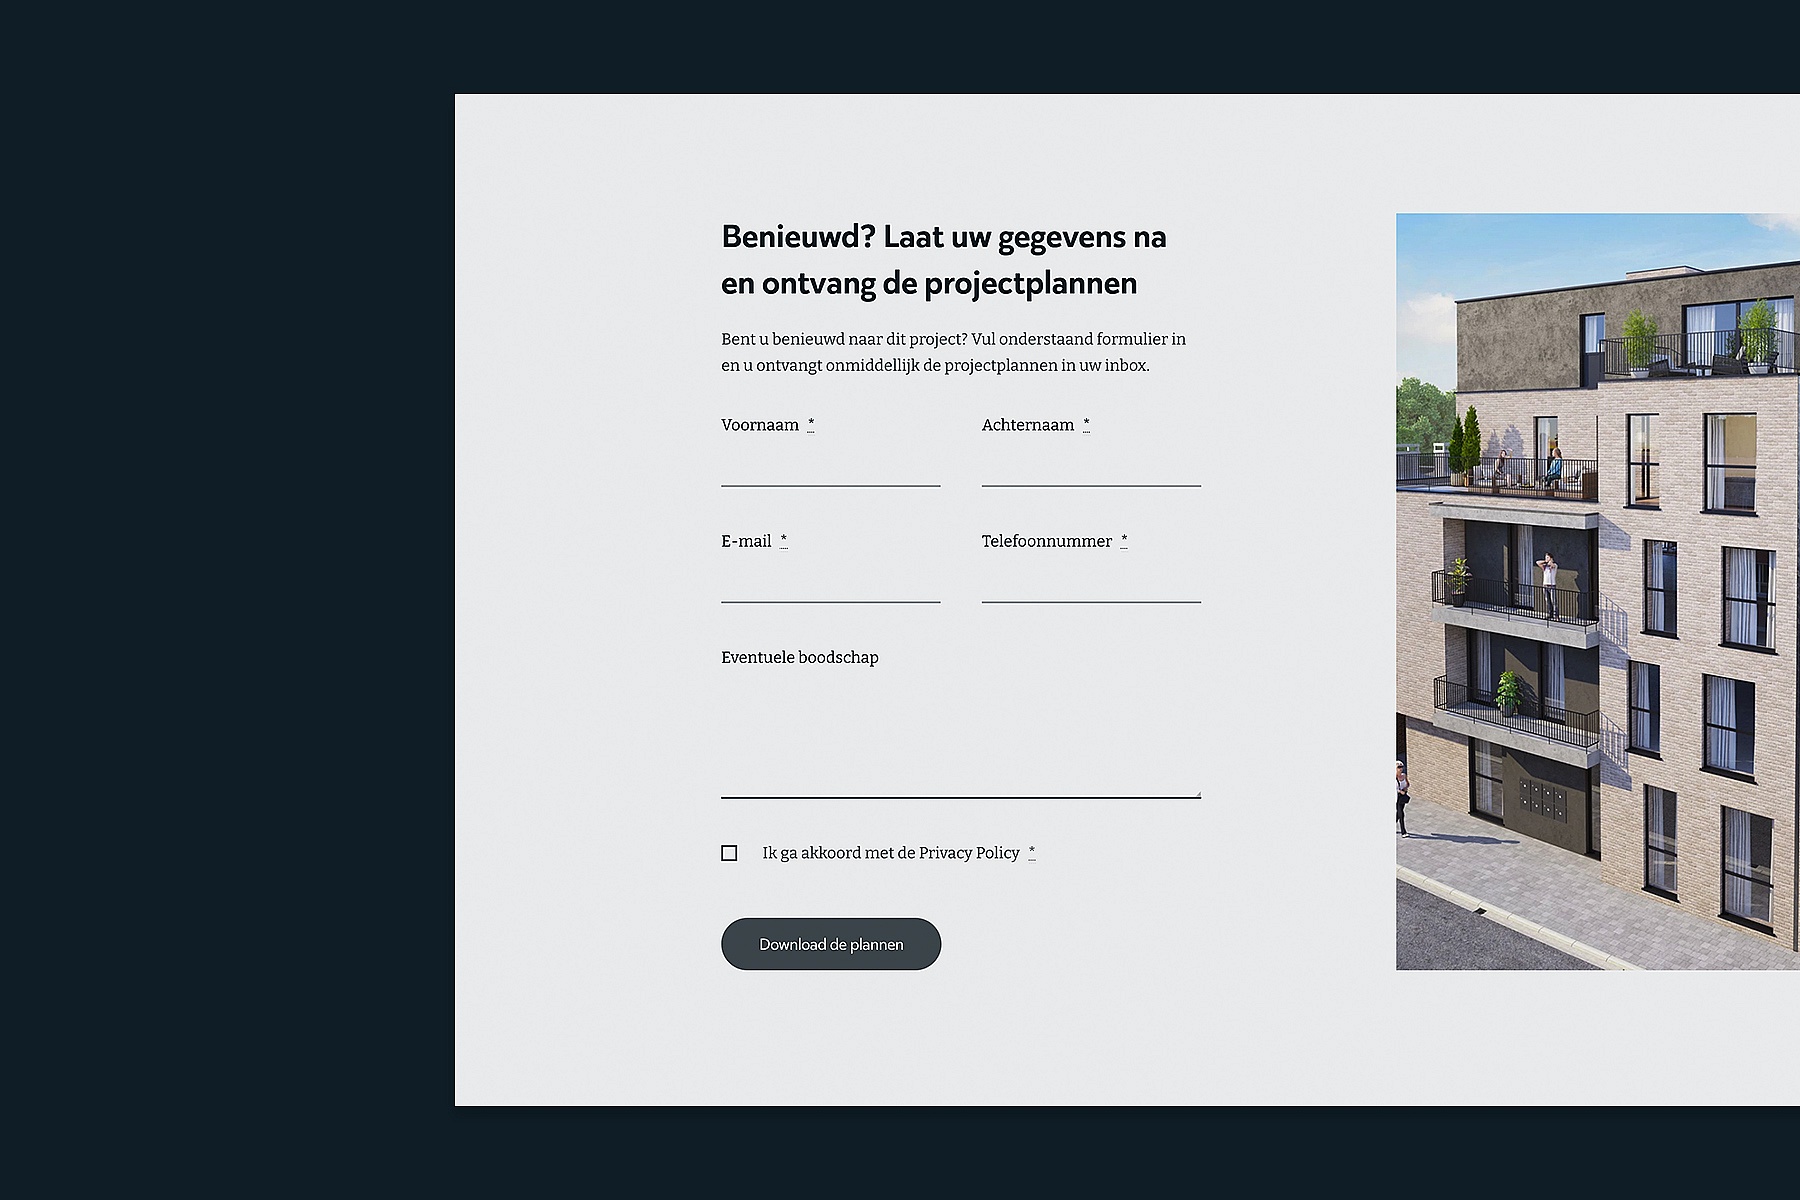 Screenshots van (details van) de website die De Paep Projectontwikkeling liet maken door Heave Webdesign Antwerpen